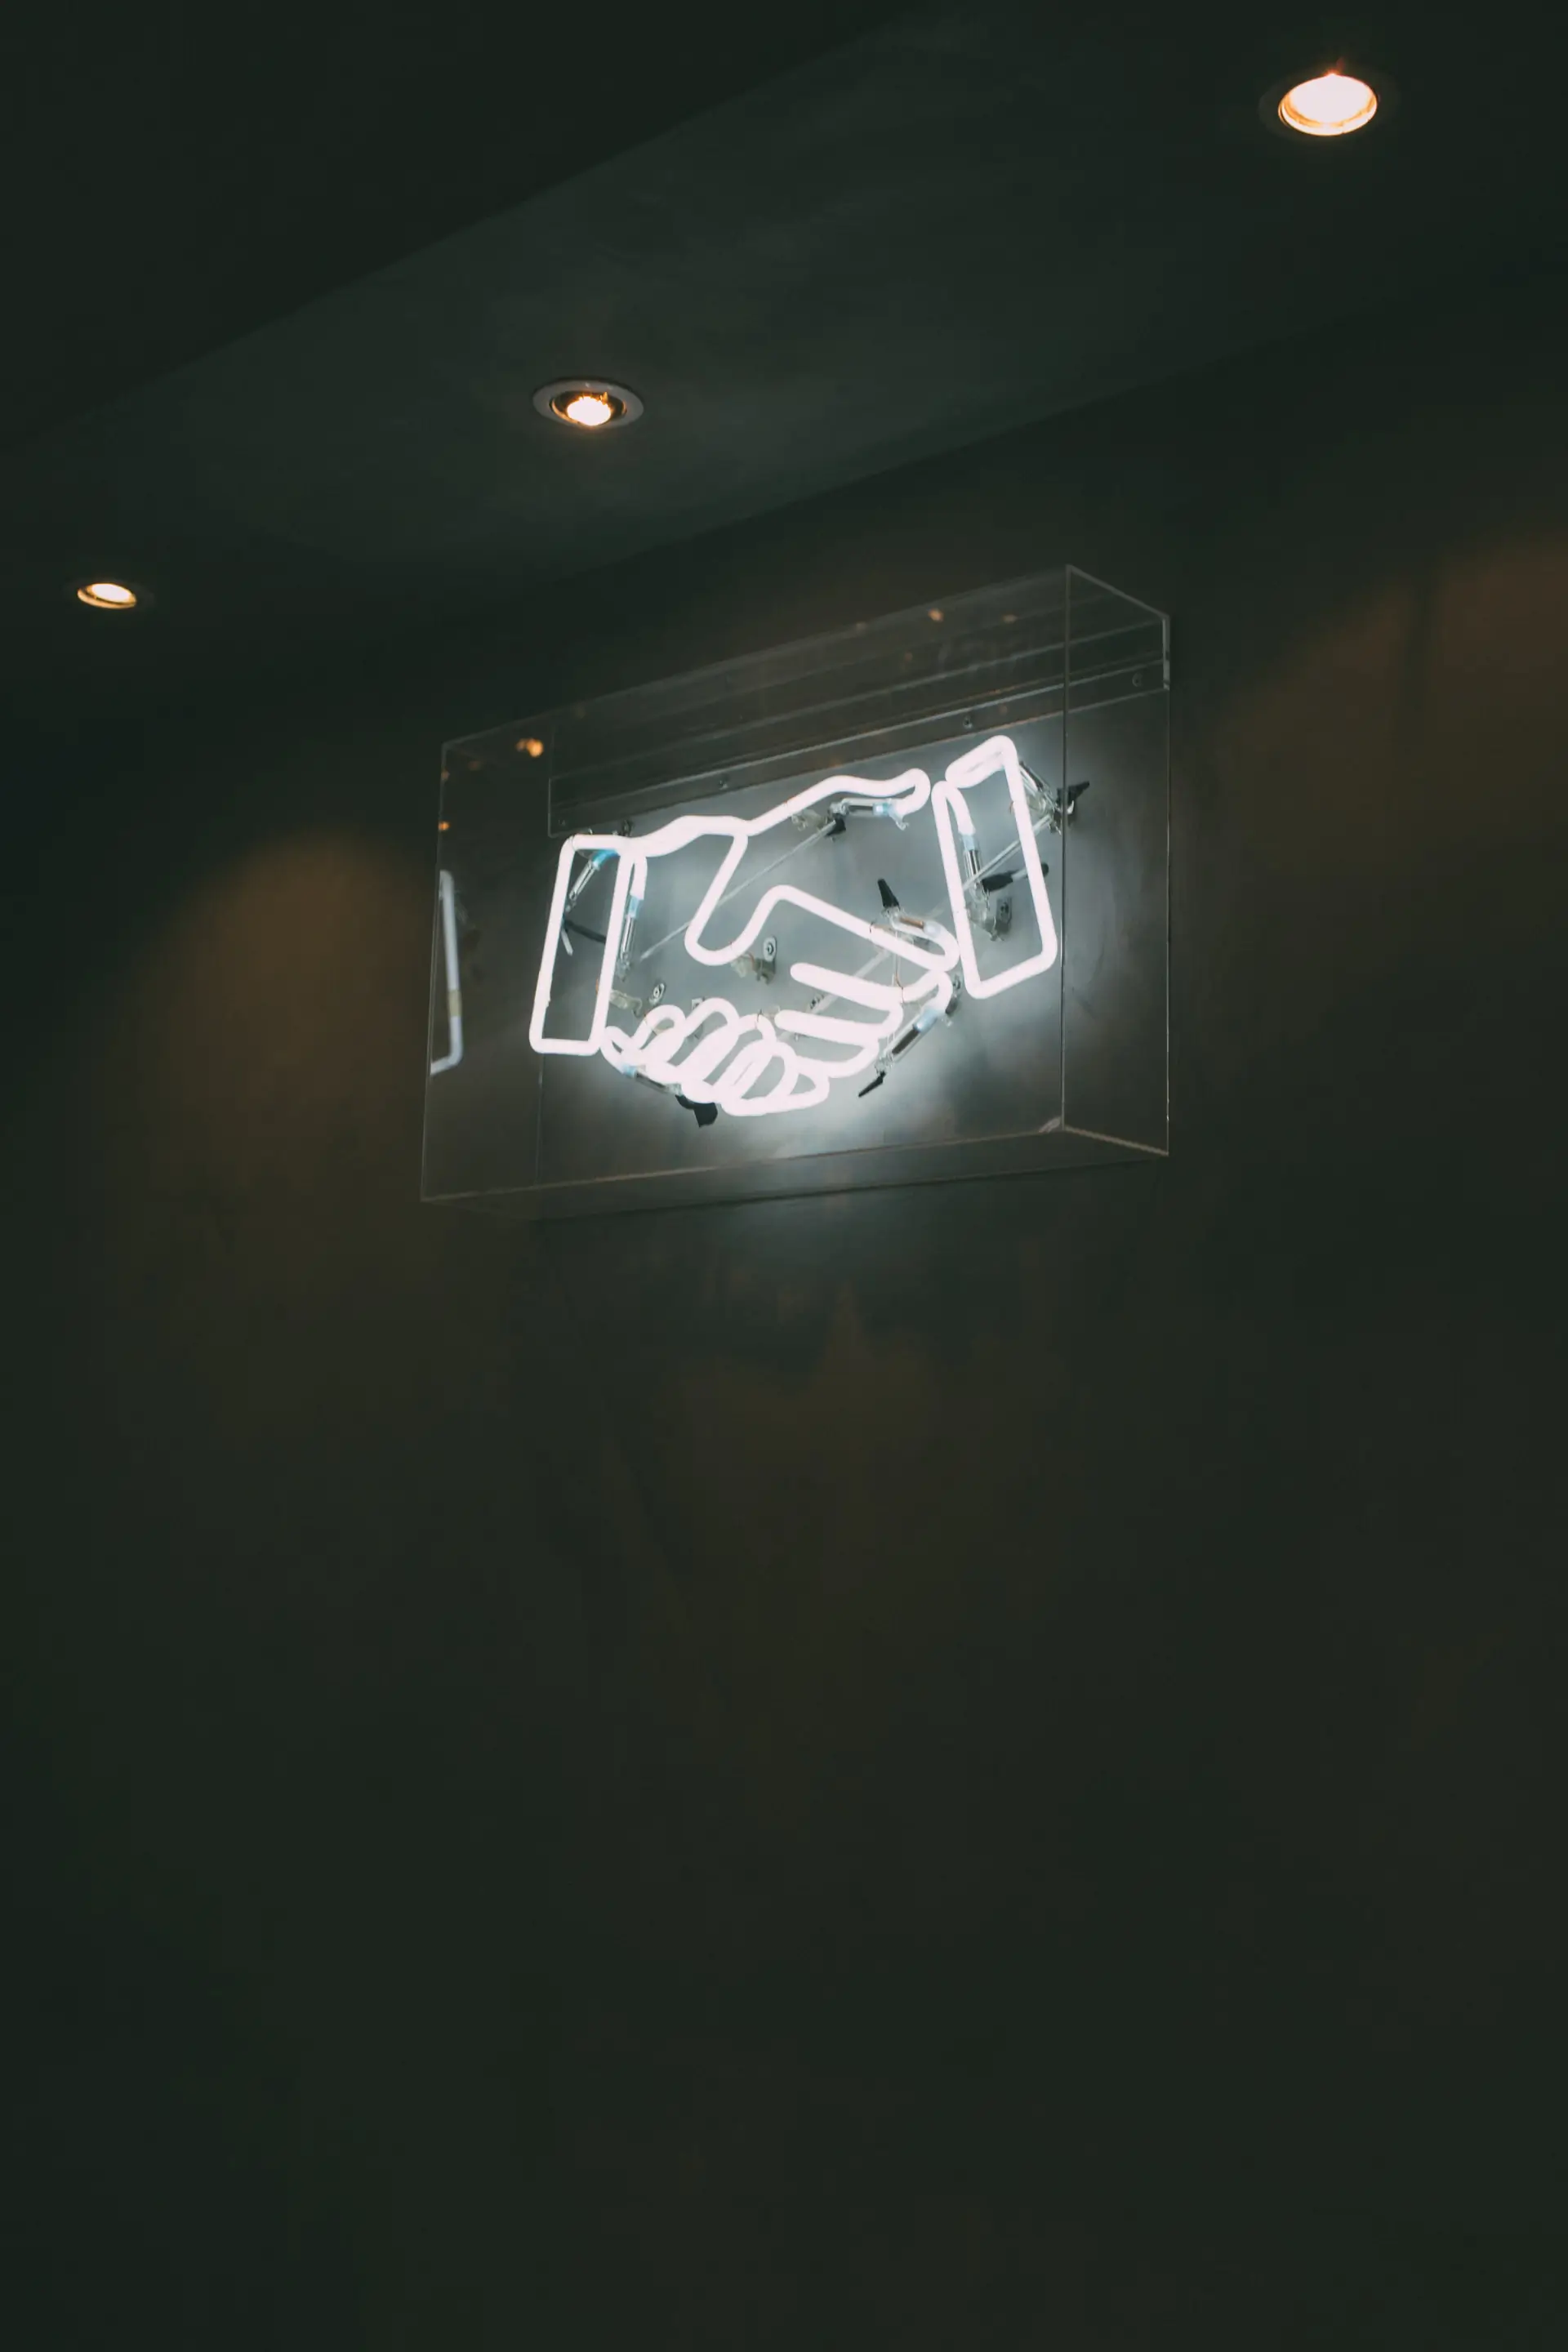 Bild von einem Neon-Zeichen von zwei sich gegenseitig schüttelnden Händen